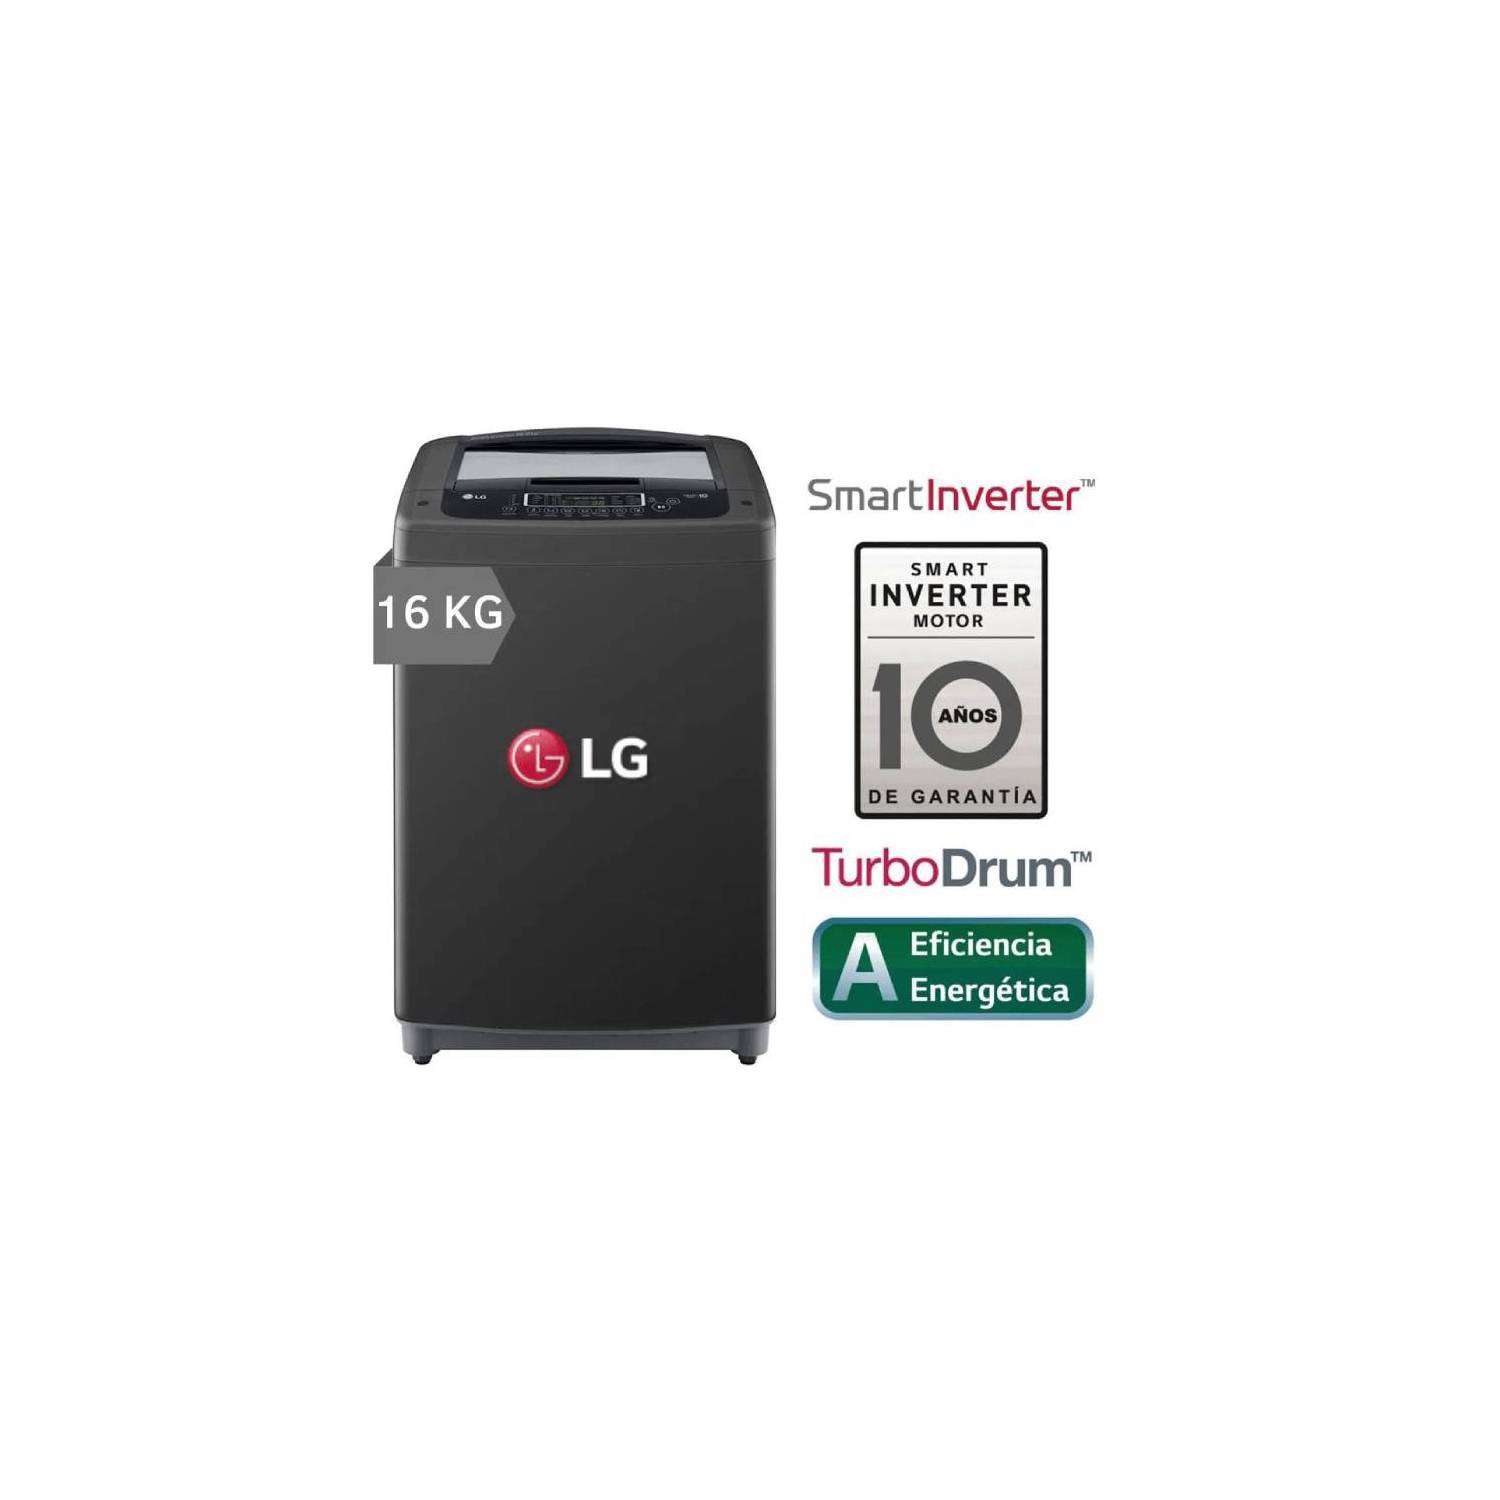 LG Lavadora Carga Superior Smart Inverter con TurboDrum 16 Kg